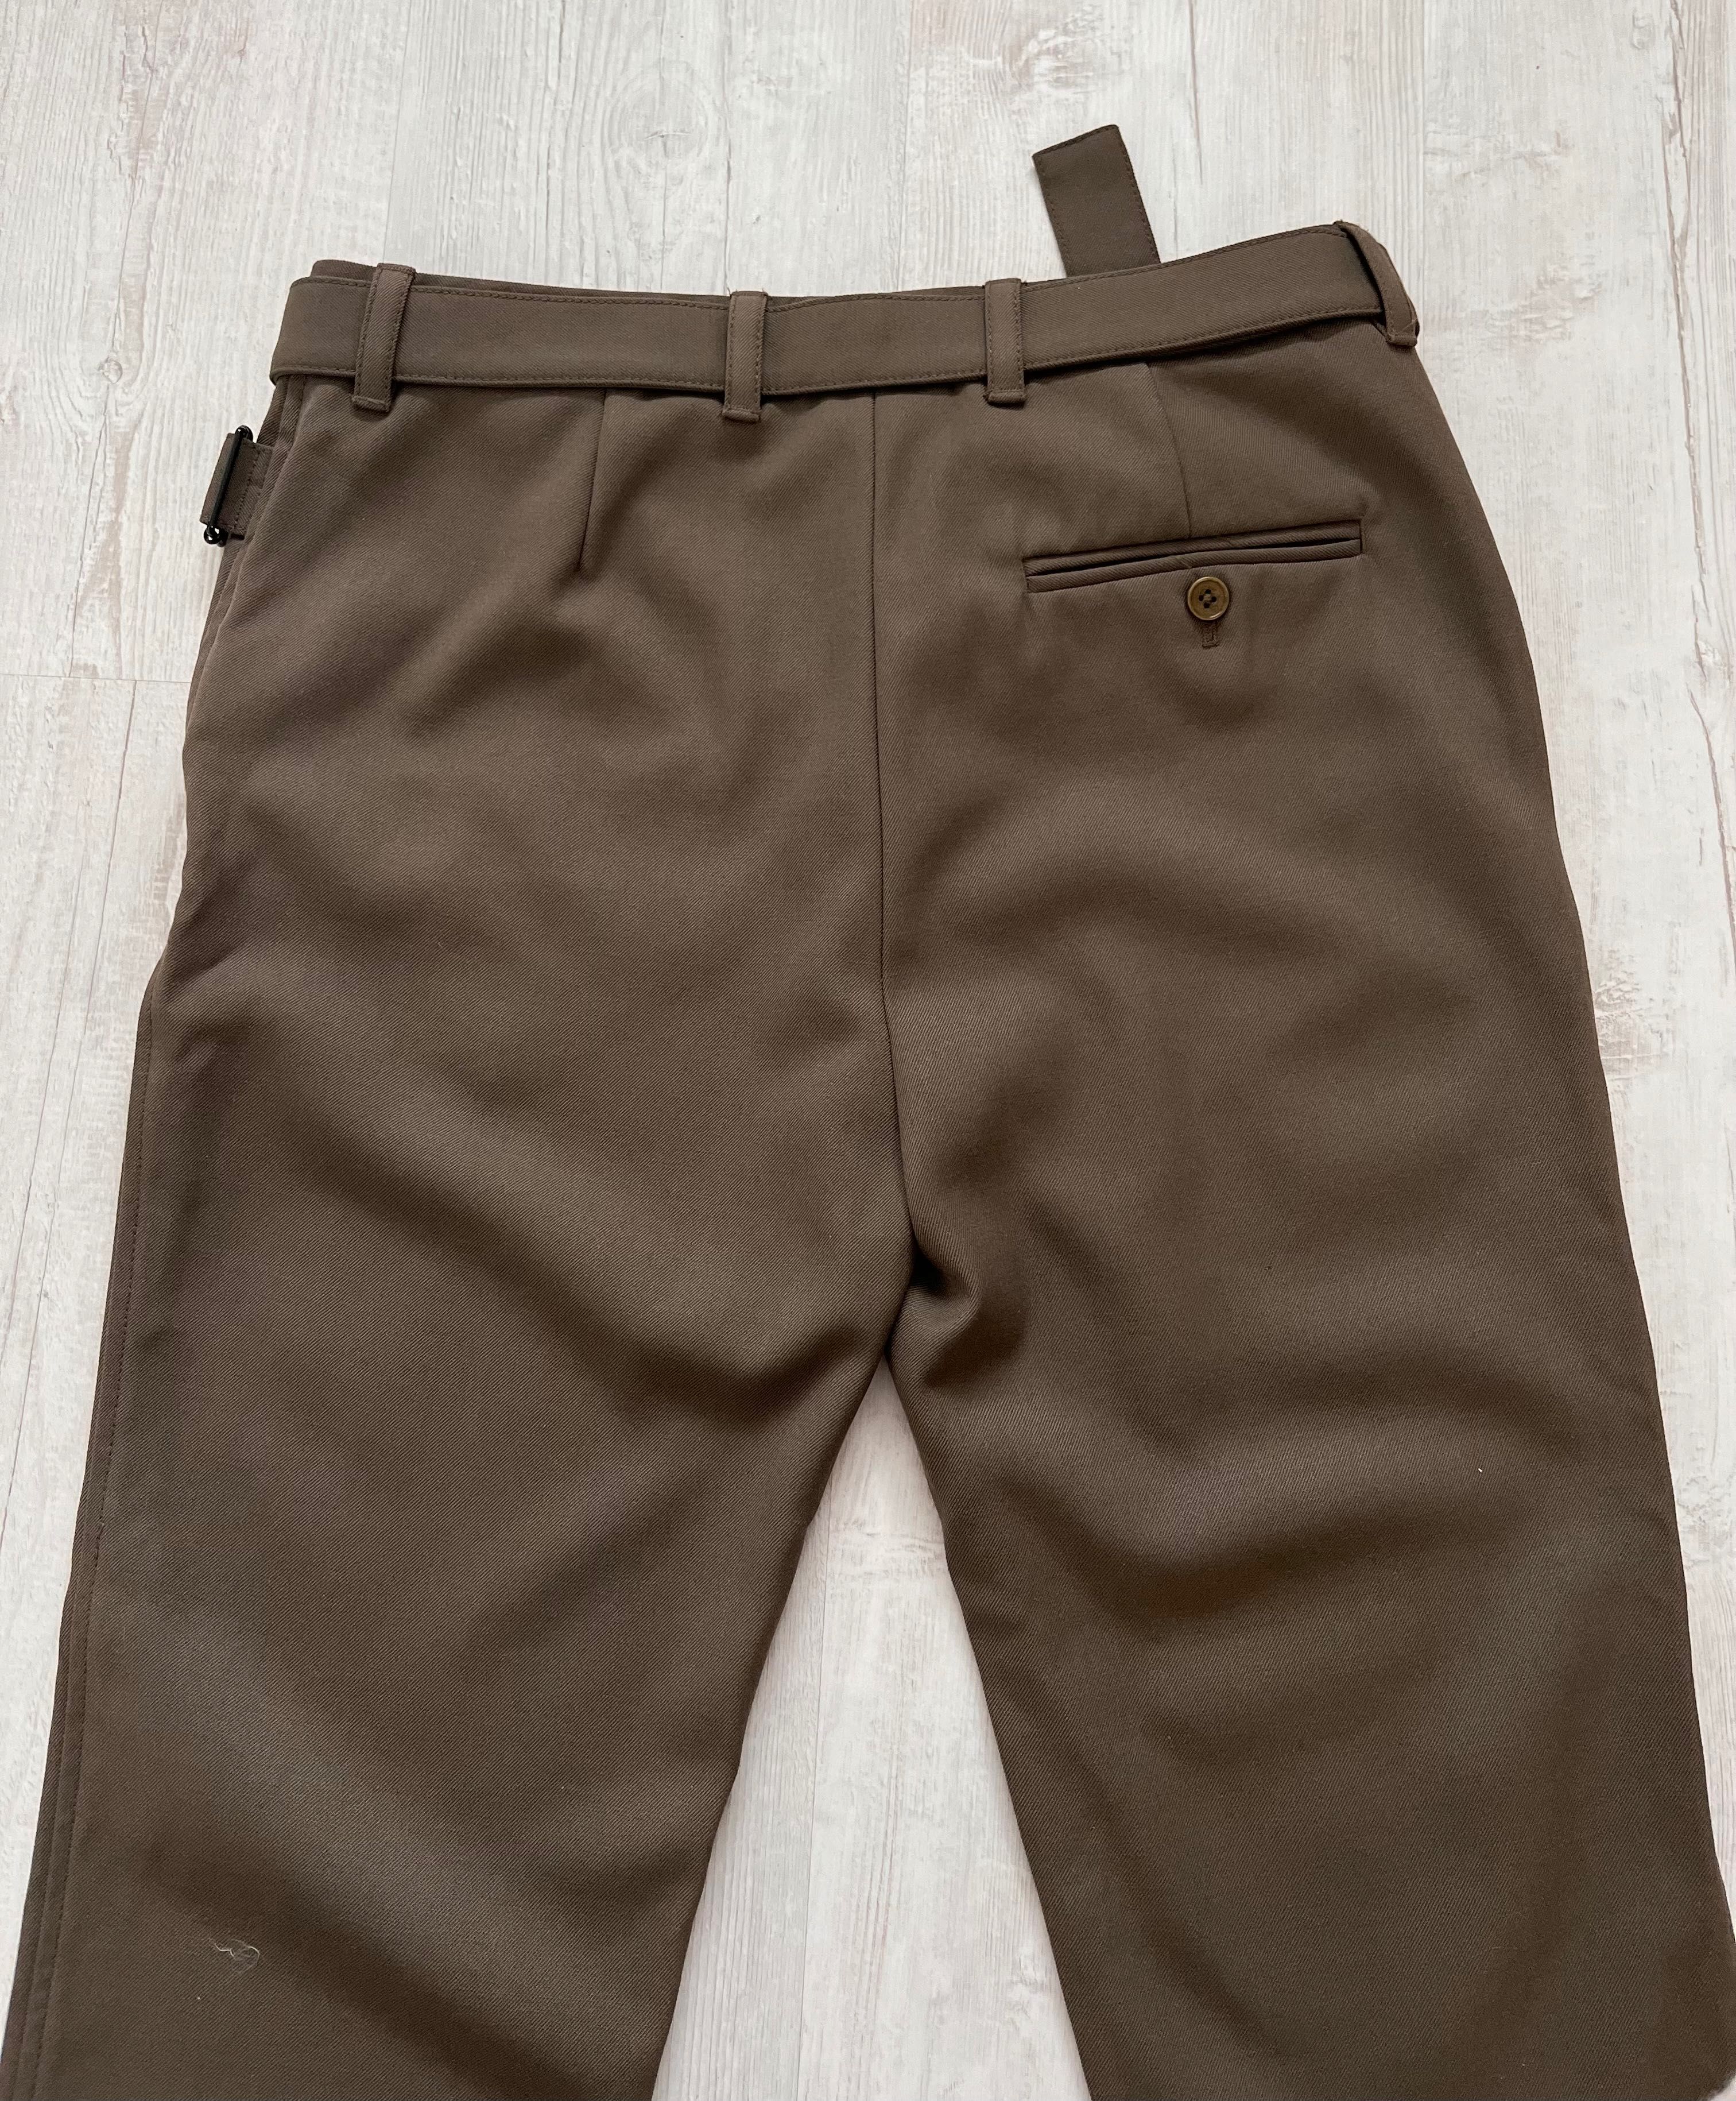 Spodnie khaki phillip lim rozmiar 4/34-36